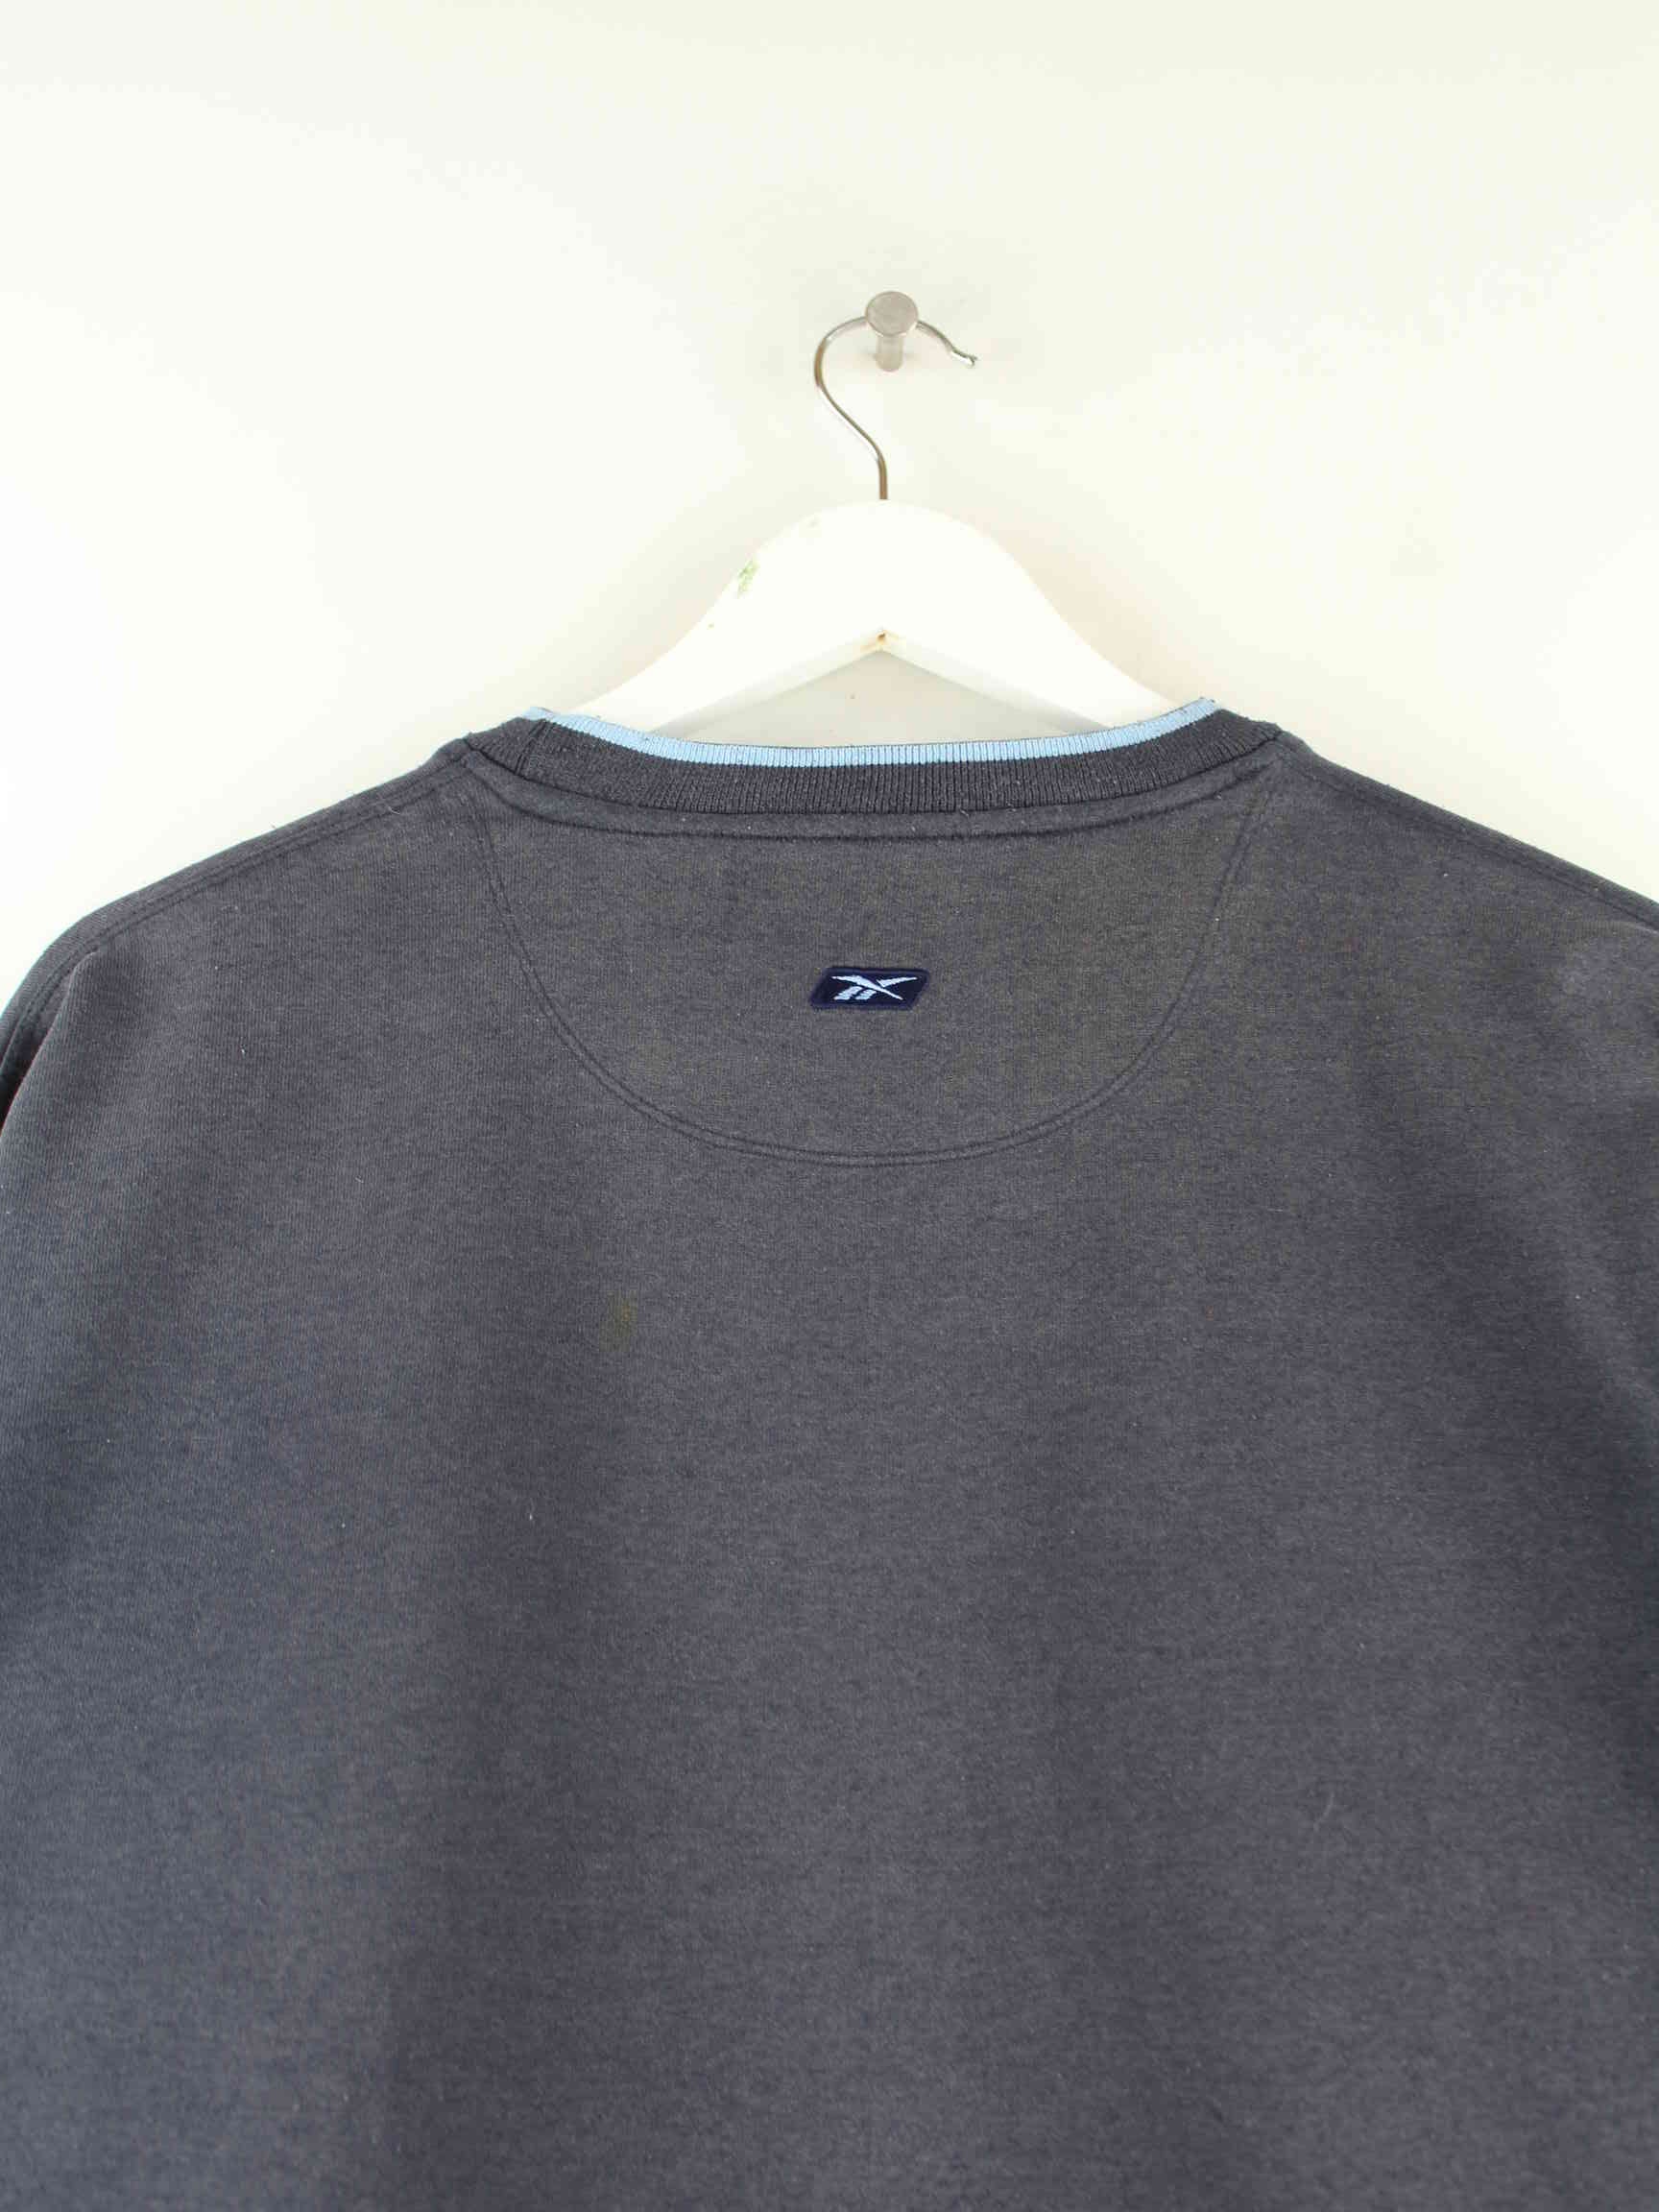 Reebok 00s Basic Sweater Blau L (detail image 3)